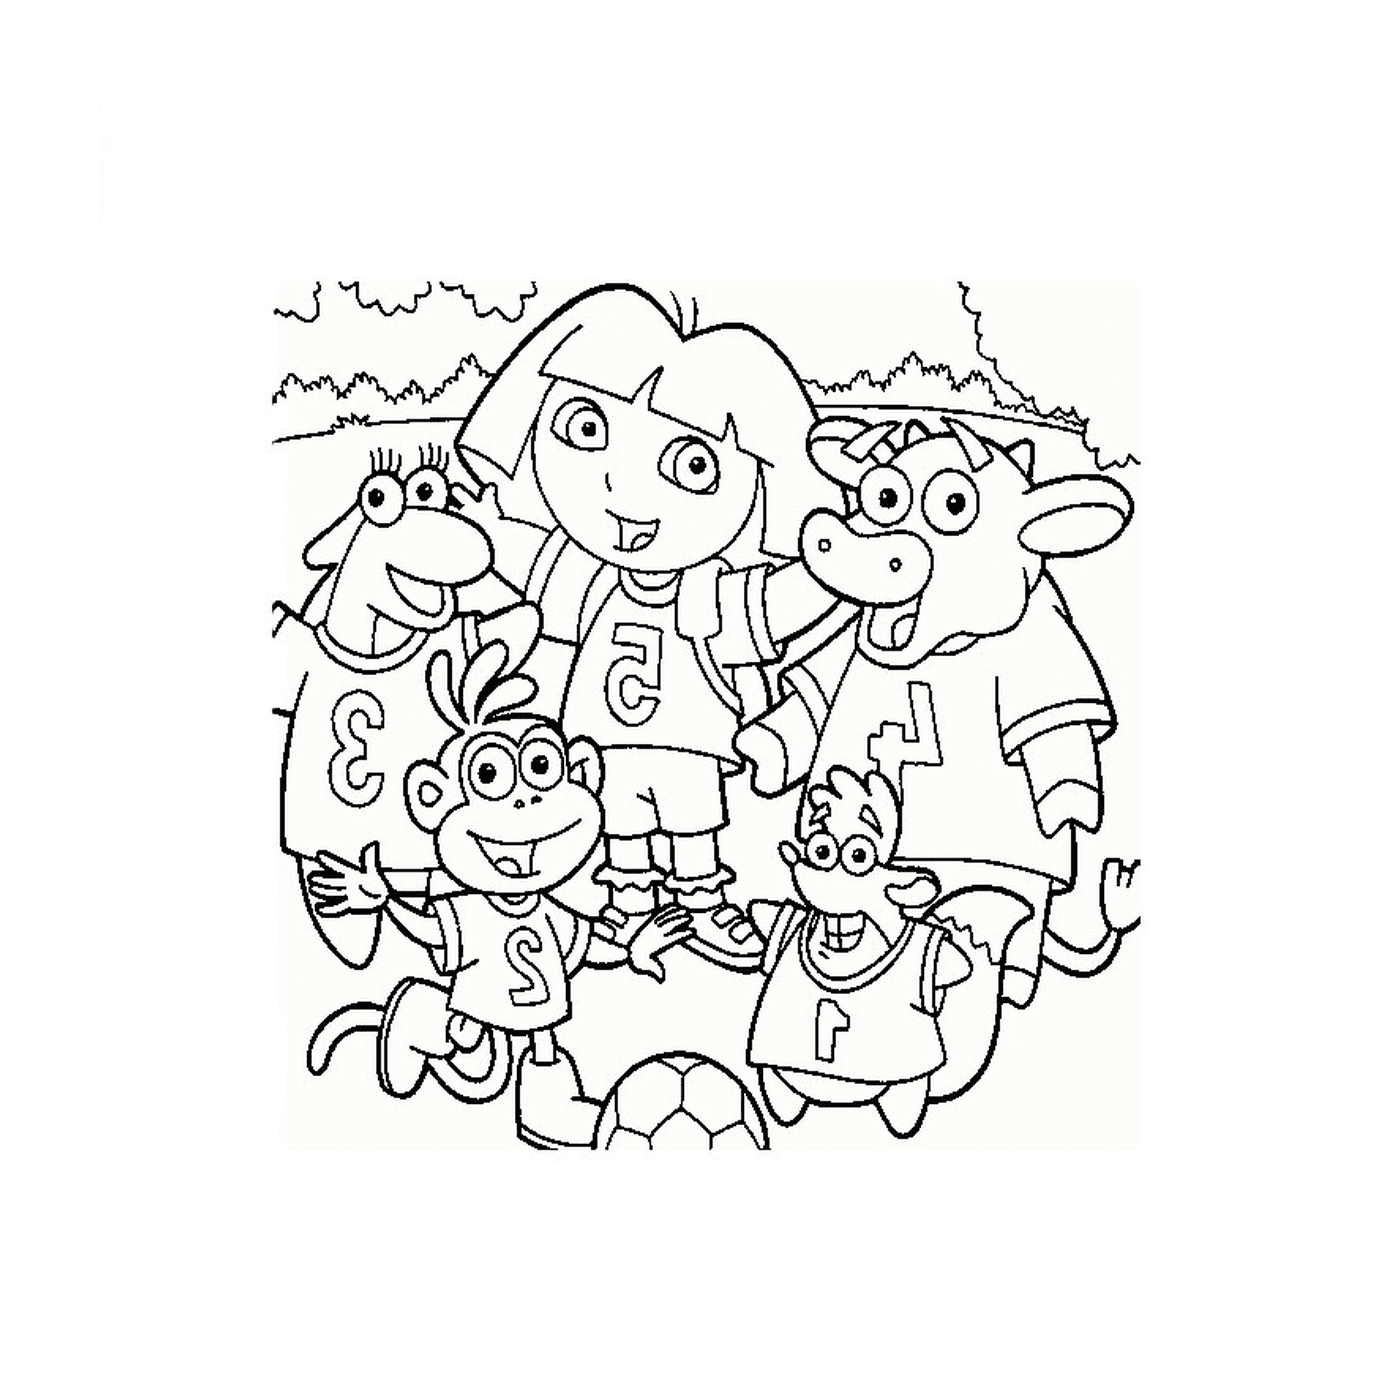  Dora e i suoi amici si divertono 